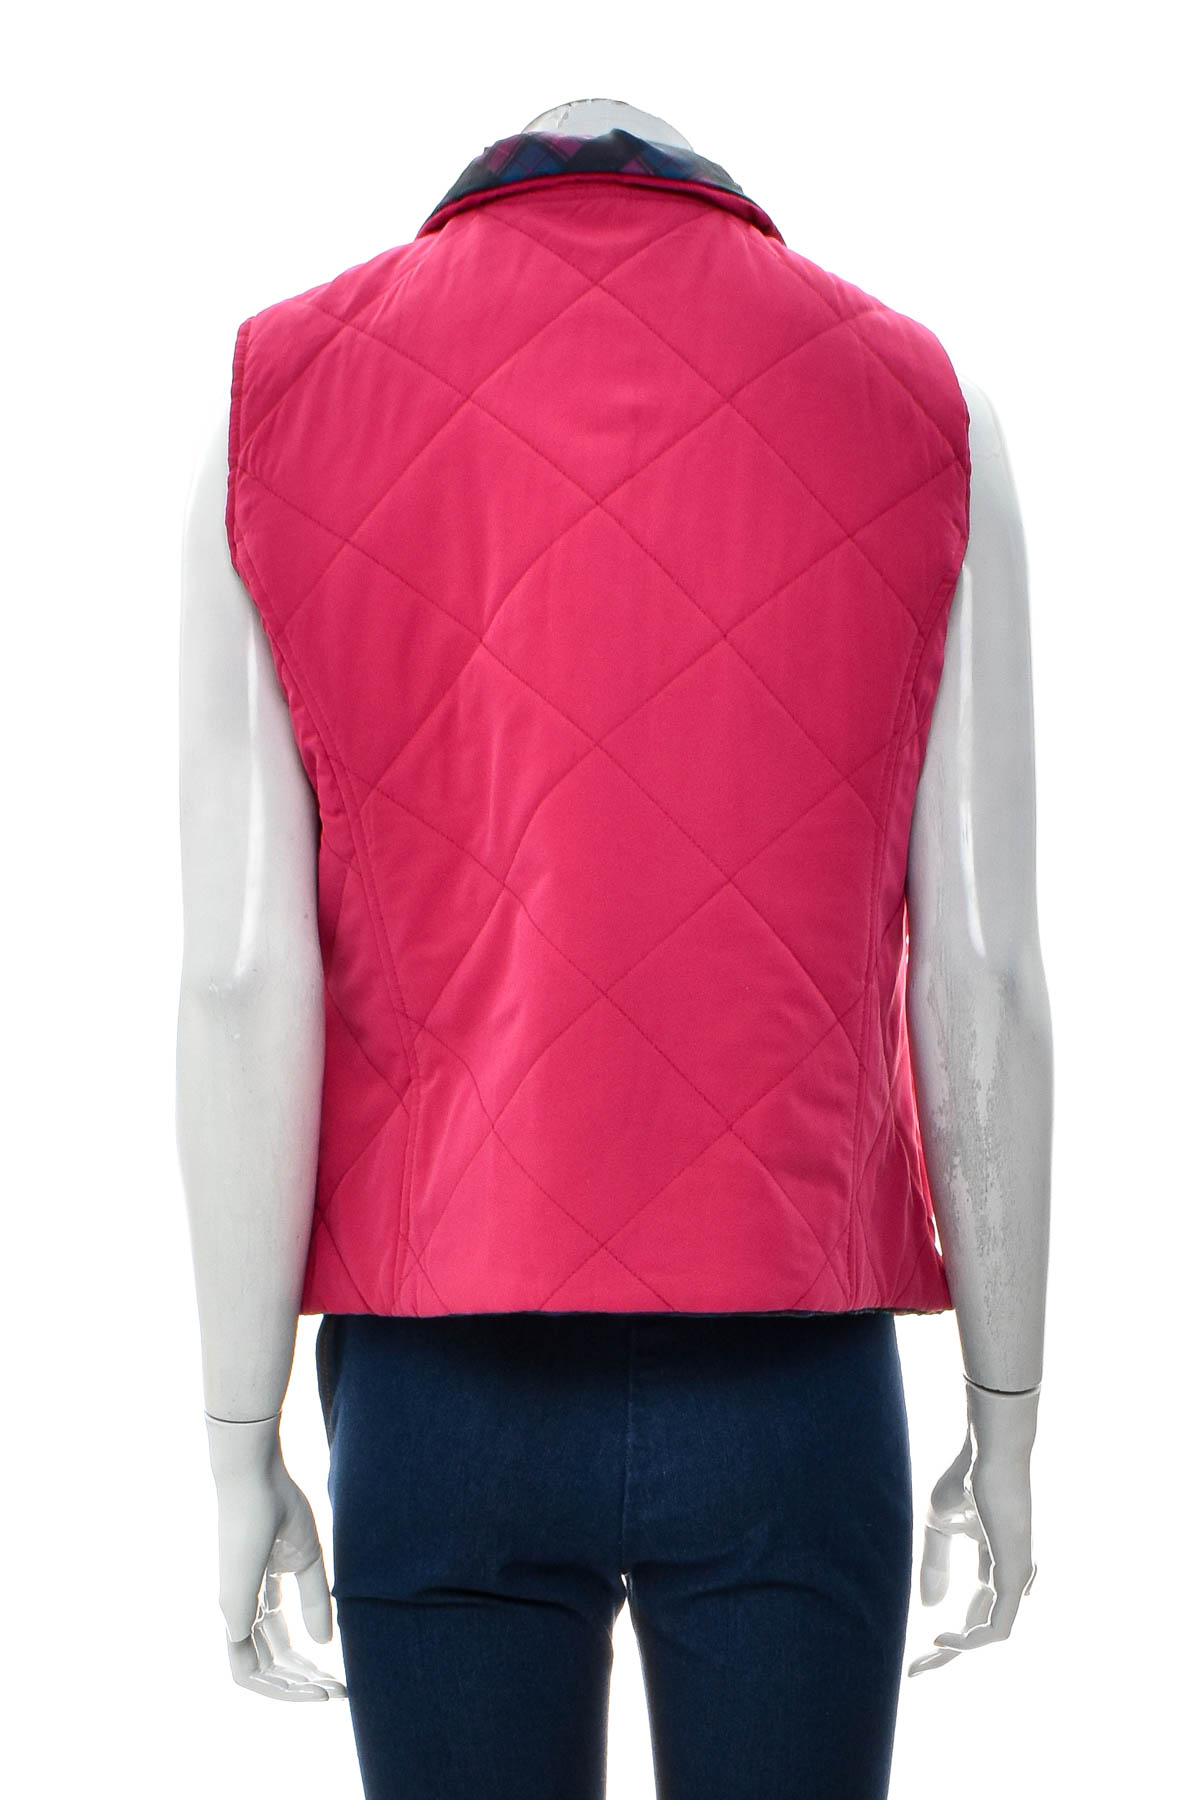 Women's vest reversible  - SJB ACTIVE - 3